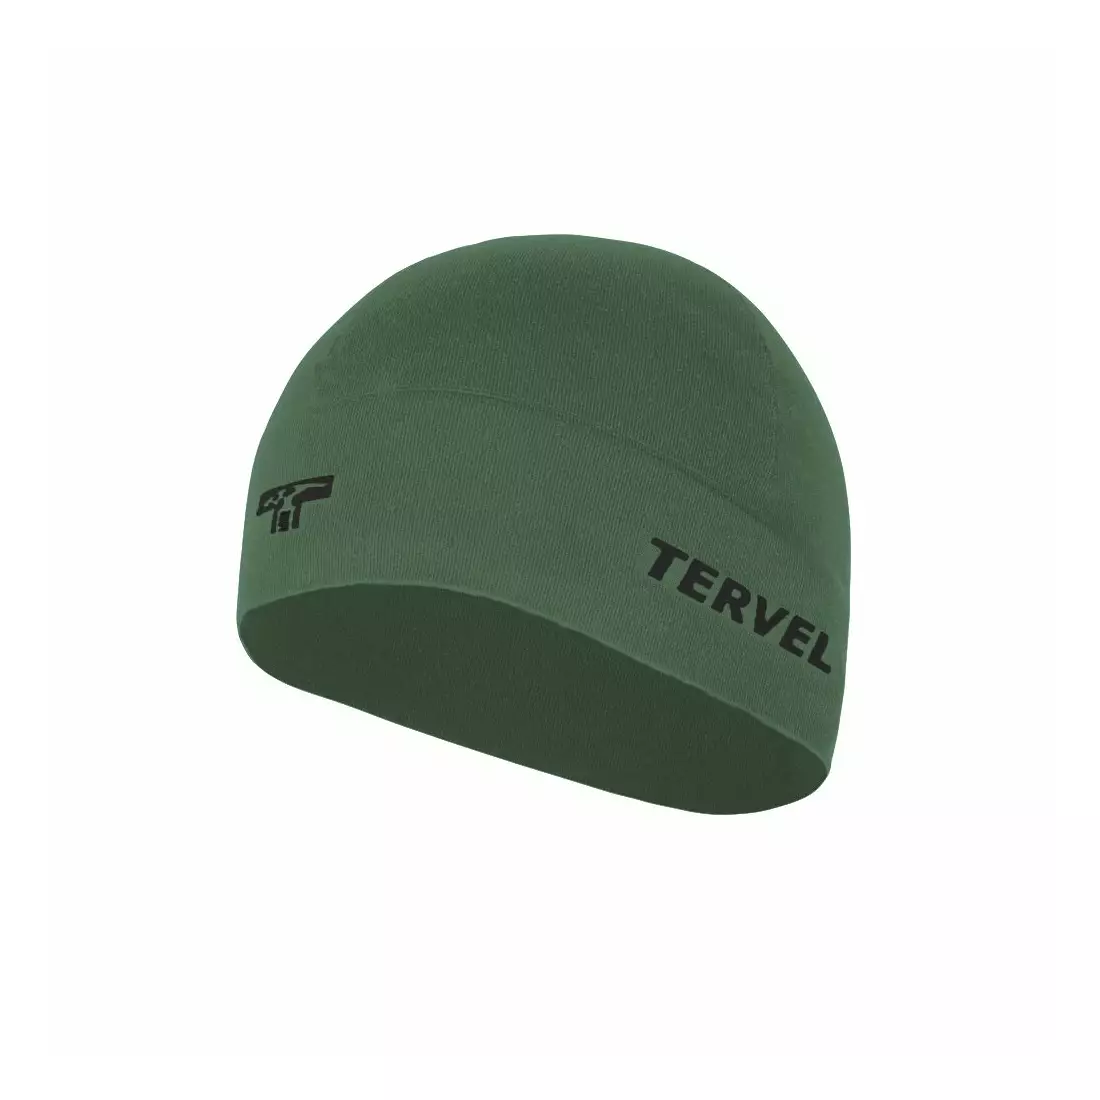 TERVEL 7001 - COMFORTLINE - șapcă de antrenament, culoare: Military, mărime: Universal